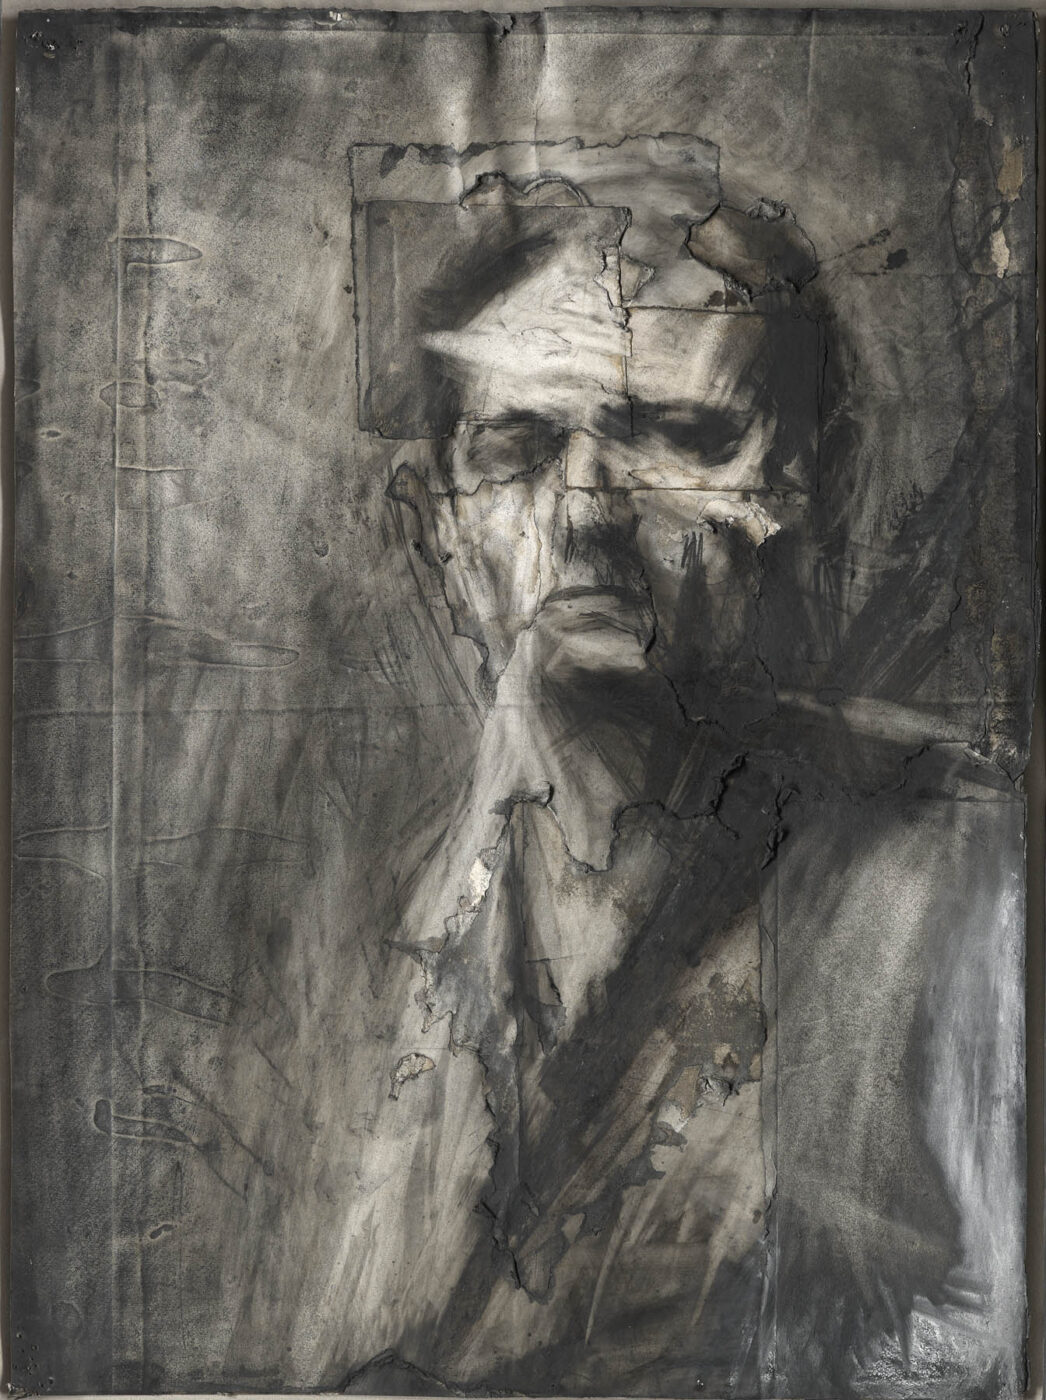 Frank Auerbach Portraits - The Courtauld